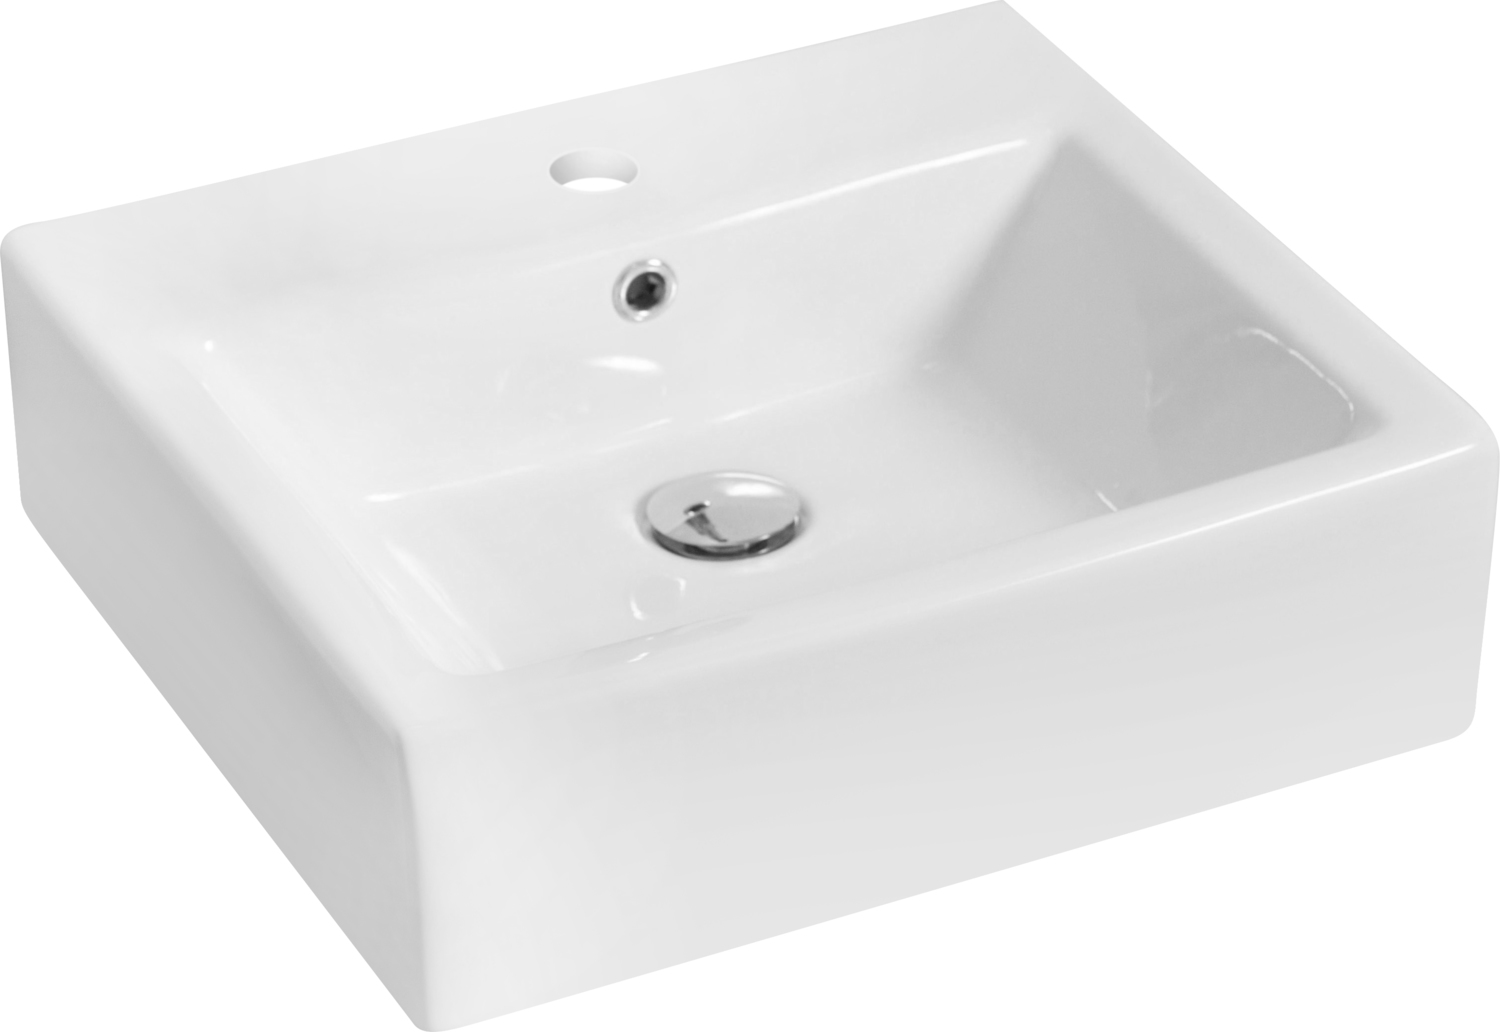 sink bowl on top of vanity American Imaginations Vessel Set Bathroom Vanity Sinks White Transitional